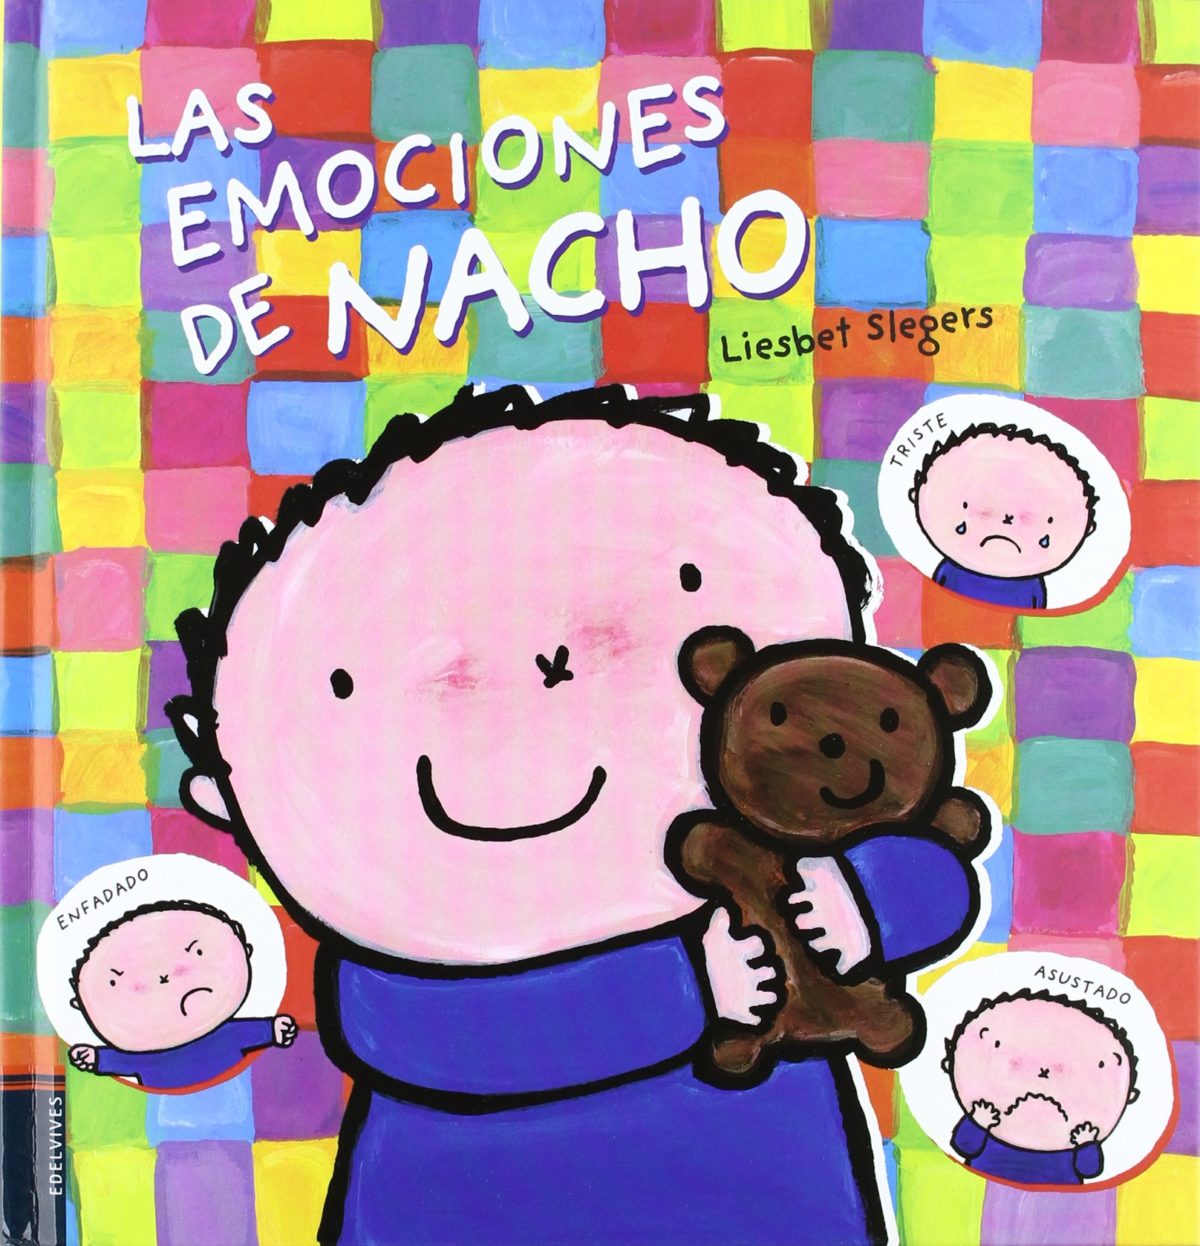 Las Emociones de Nacho, Colección Libros Moviles (Edelvives) (Álbumes ilustrados) (Español) Tapa dura